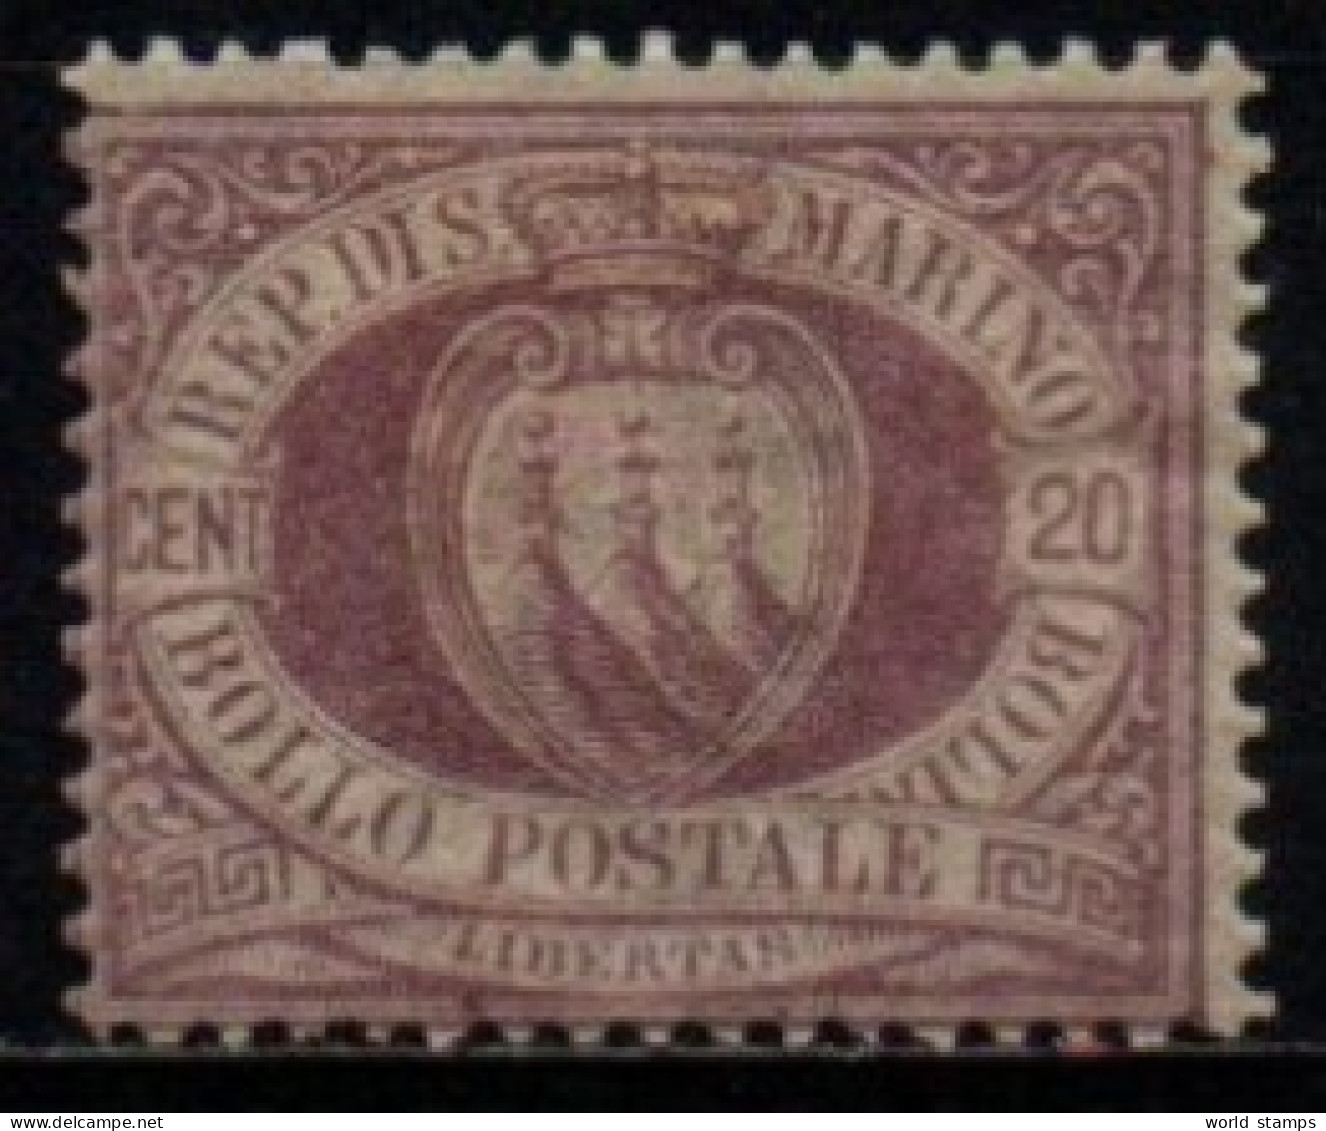 SAINT-MARIN 1895-9 * - Unused Stamps